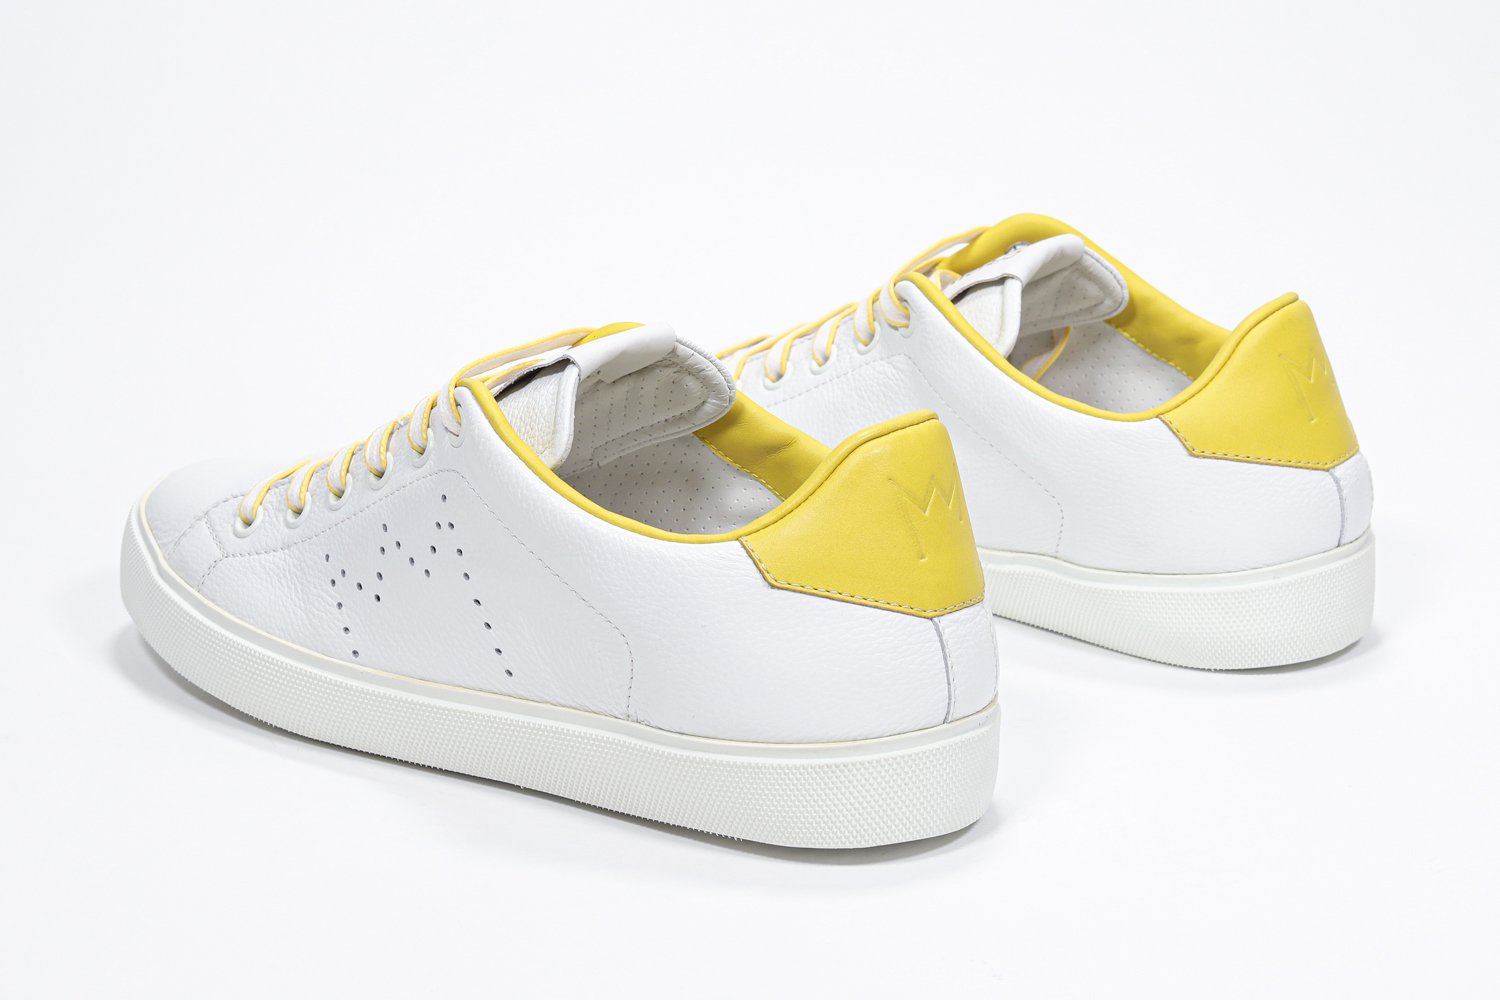 Vista posteriore a tre quarti di BASSE  sneaker  bianco con dettagli gialli e logo della corona traforato sulla tomaia. Tomaia in pelle e suola in gomma bianca.